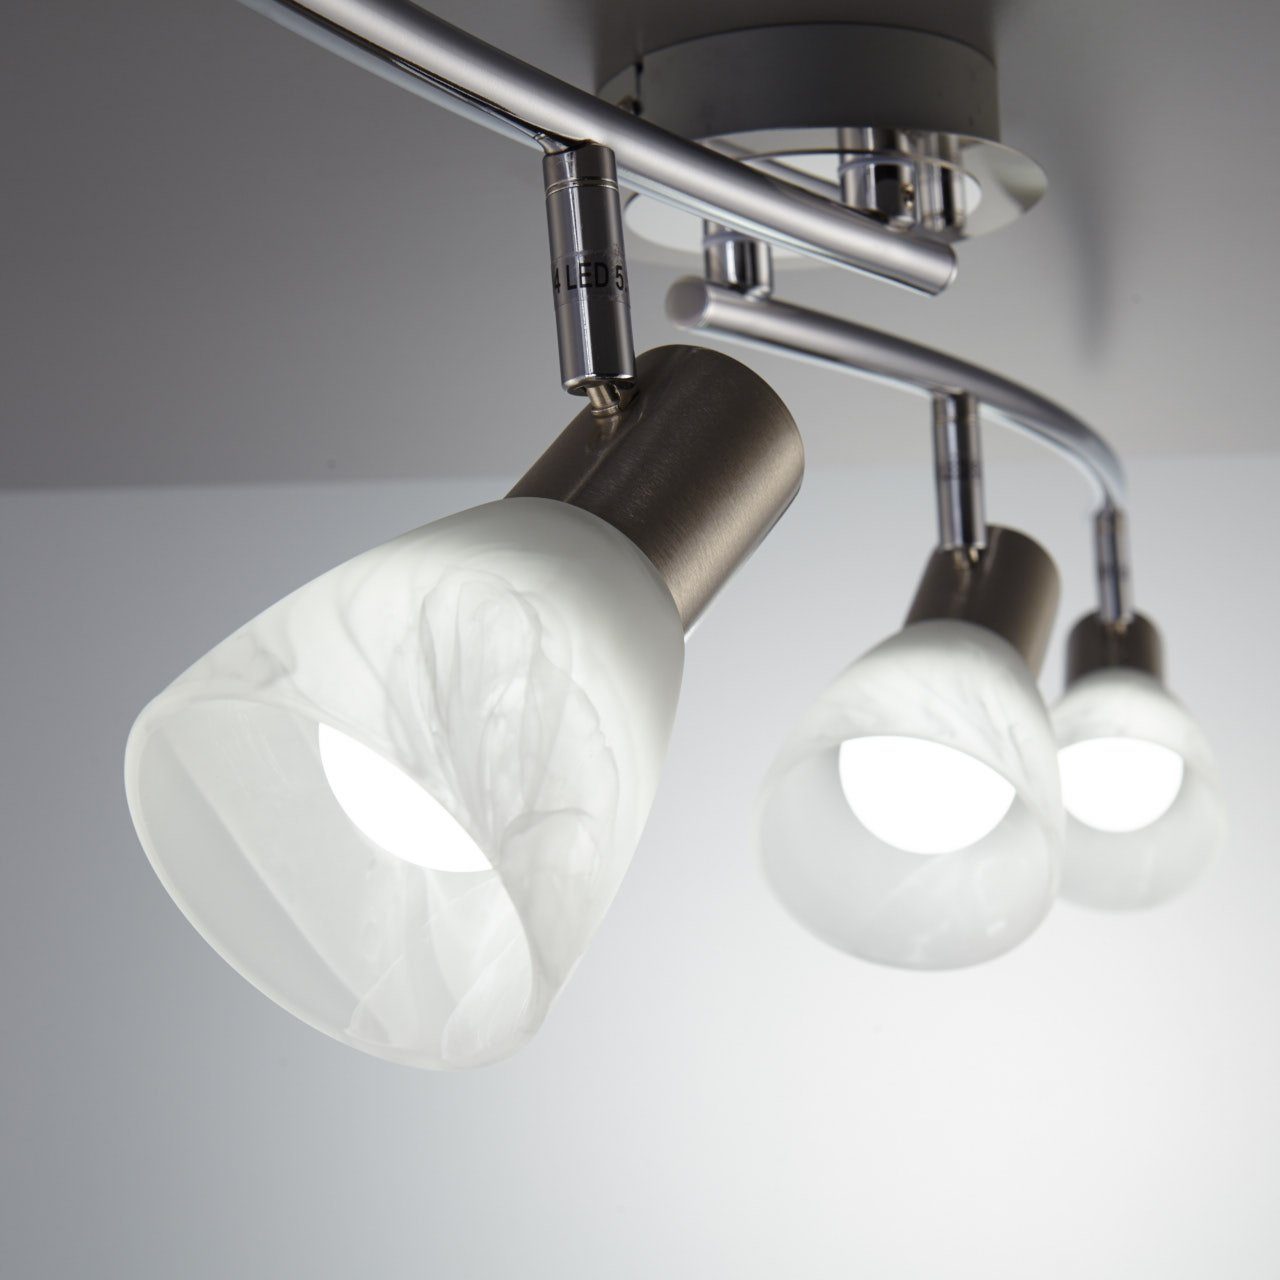 Leuchtmittel LED schwenkbar Warmweiß, Wohnzimmer E14 wechselbar, Spot B.K.Licht Metall LED Glas Leuchte Deckenlampe Deckenstrahler,